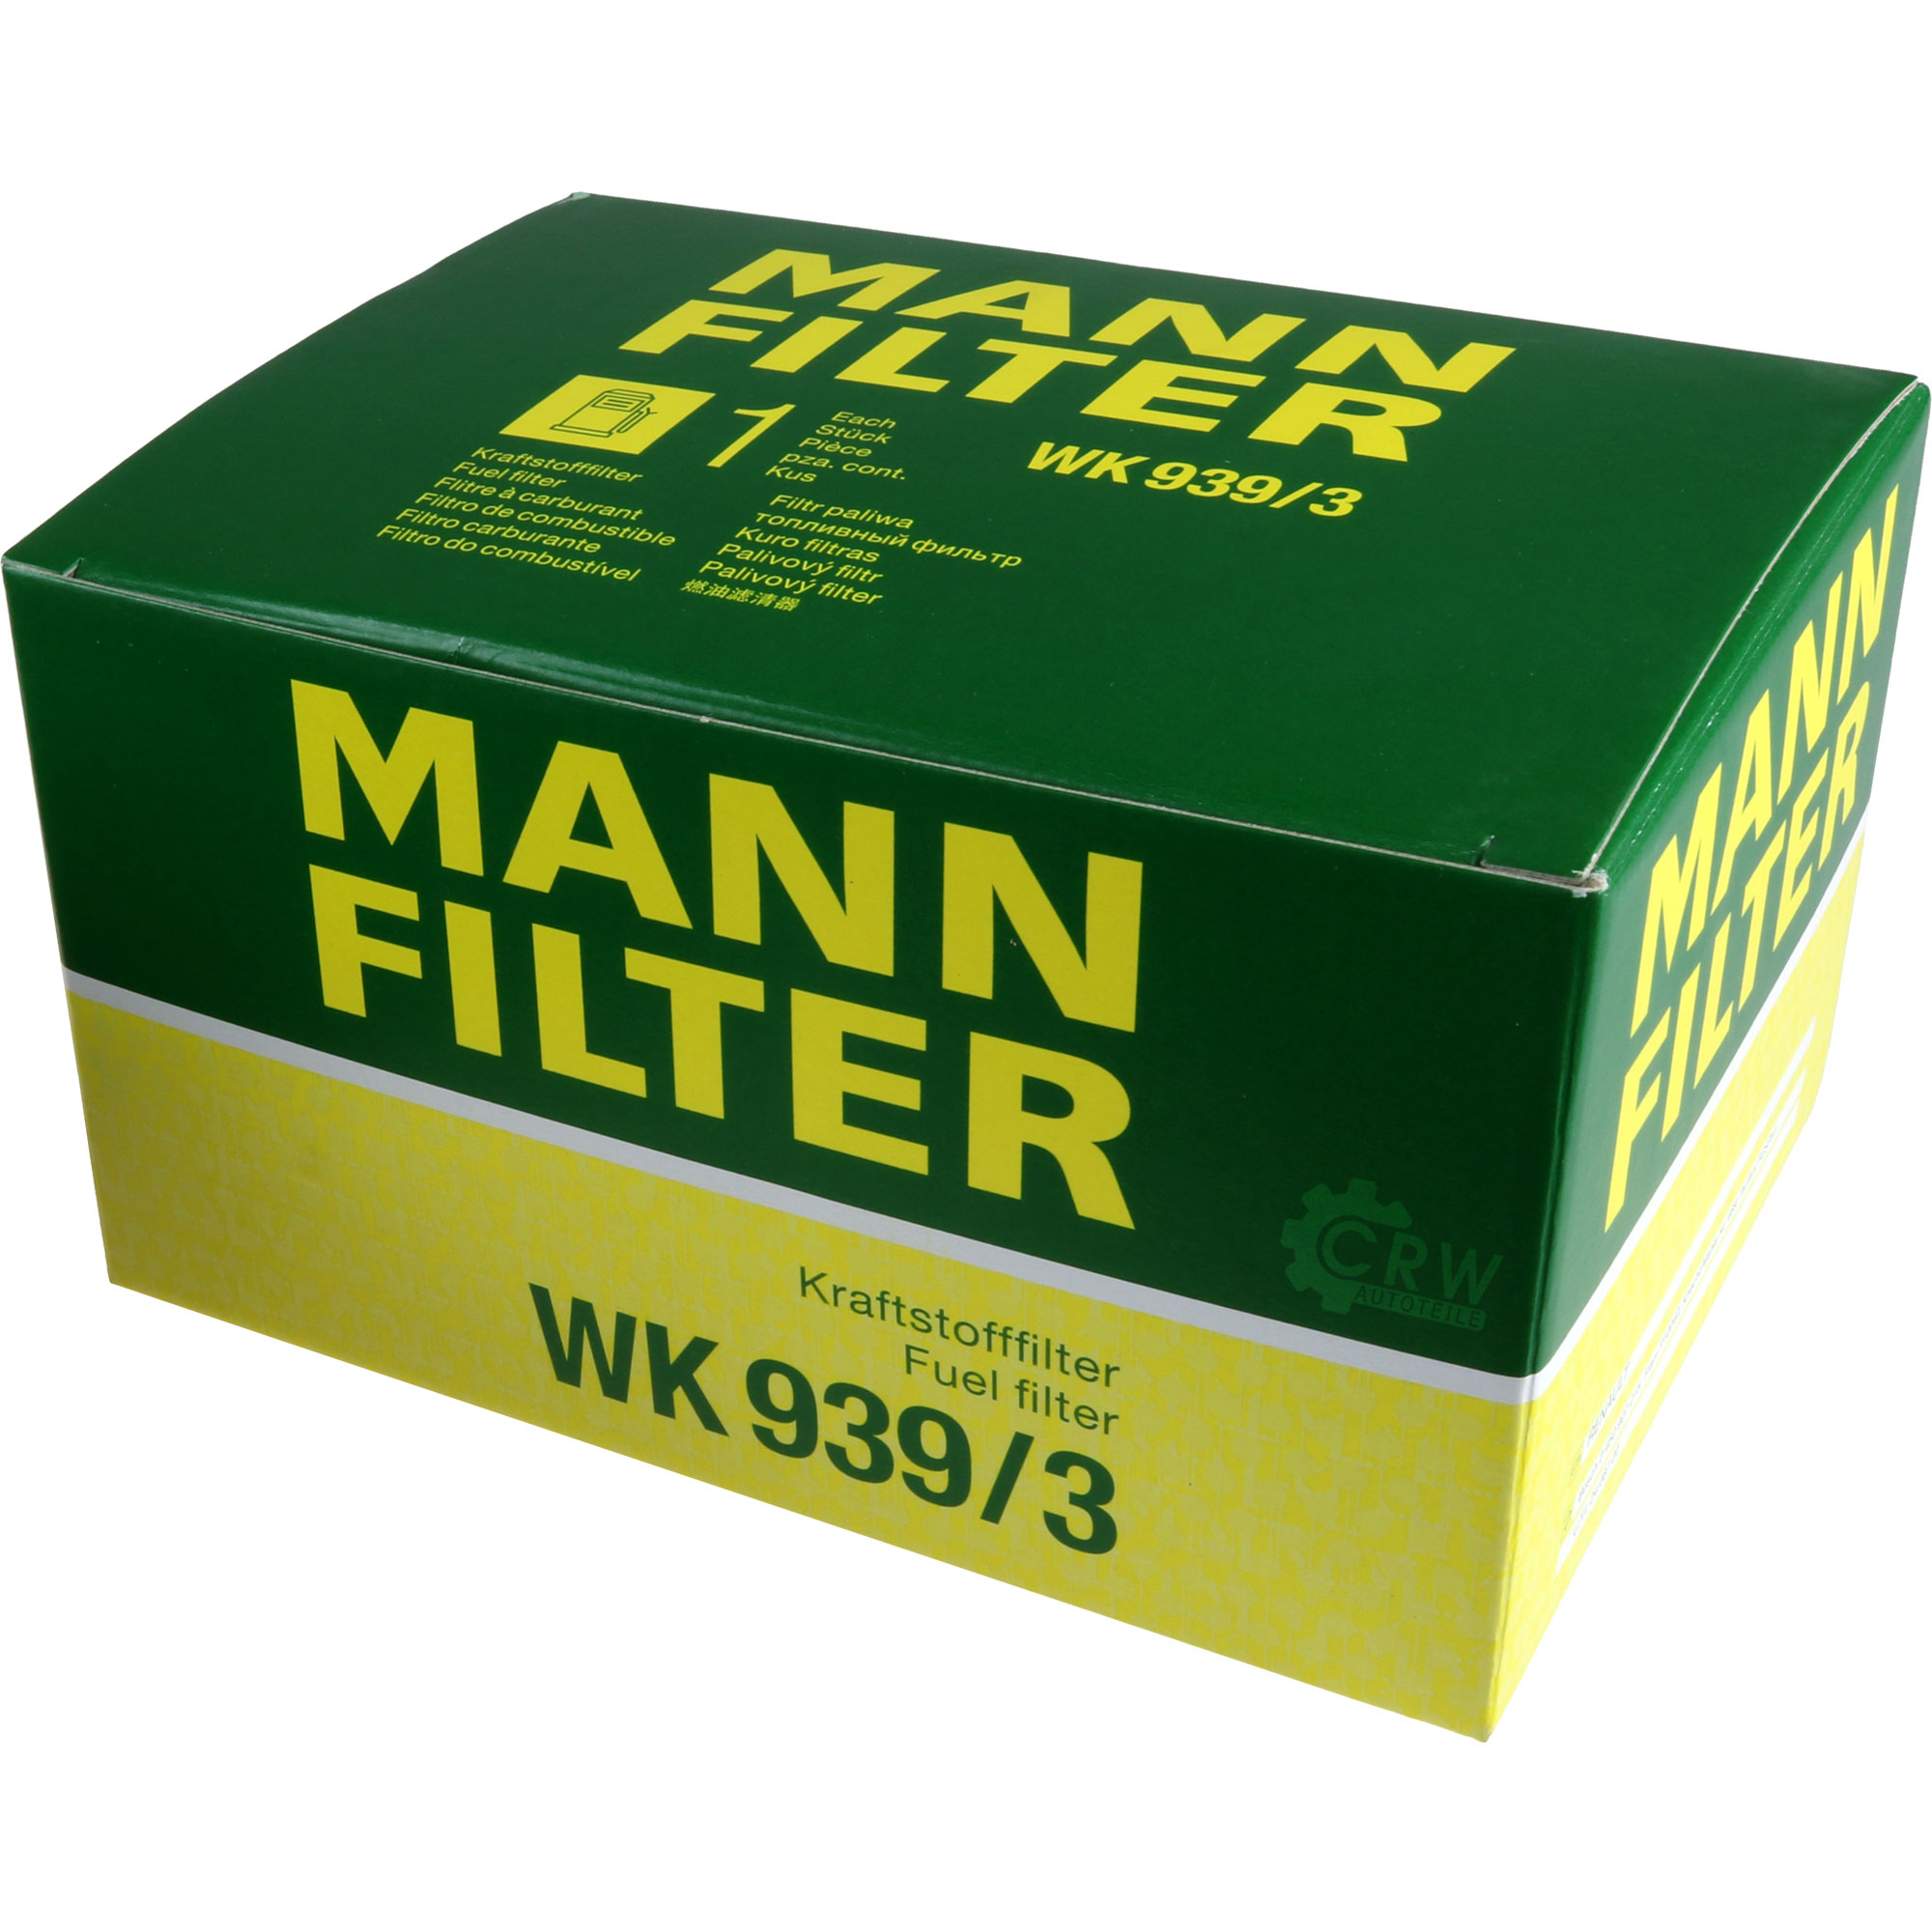 MANN-FILTER Kraftstofffilter WK 939/3 Fuel Filter